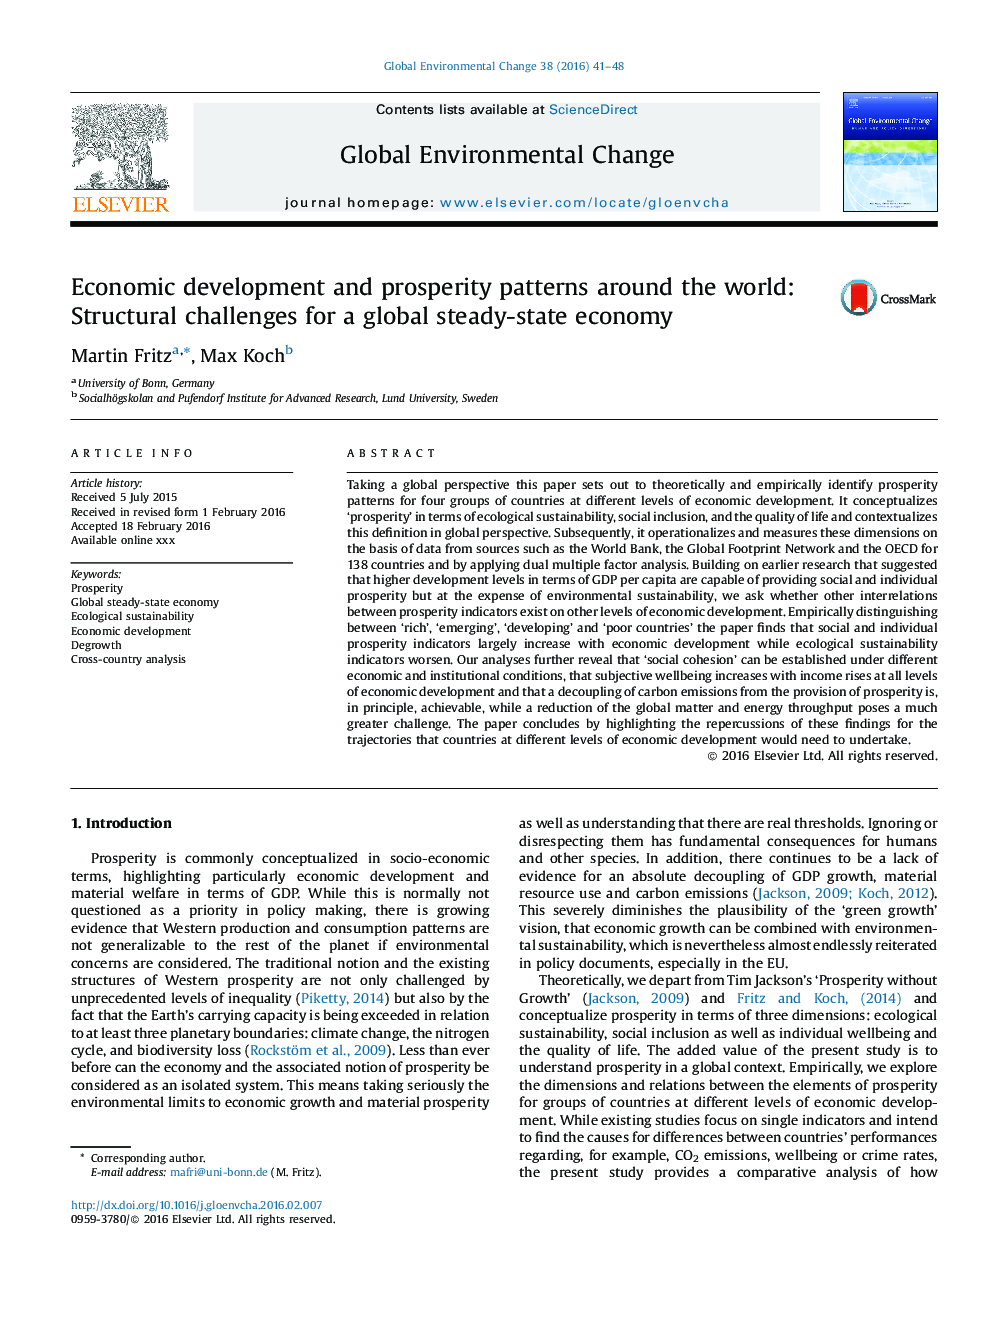 الگوهای توسعه اقتصادی و رفاه در سراسر جهان: چالش های ساختاری برای یک اقتصاد جهانی پایدار 